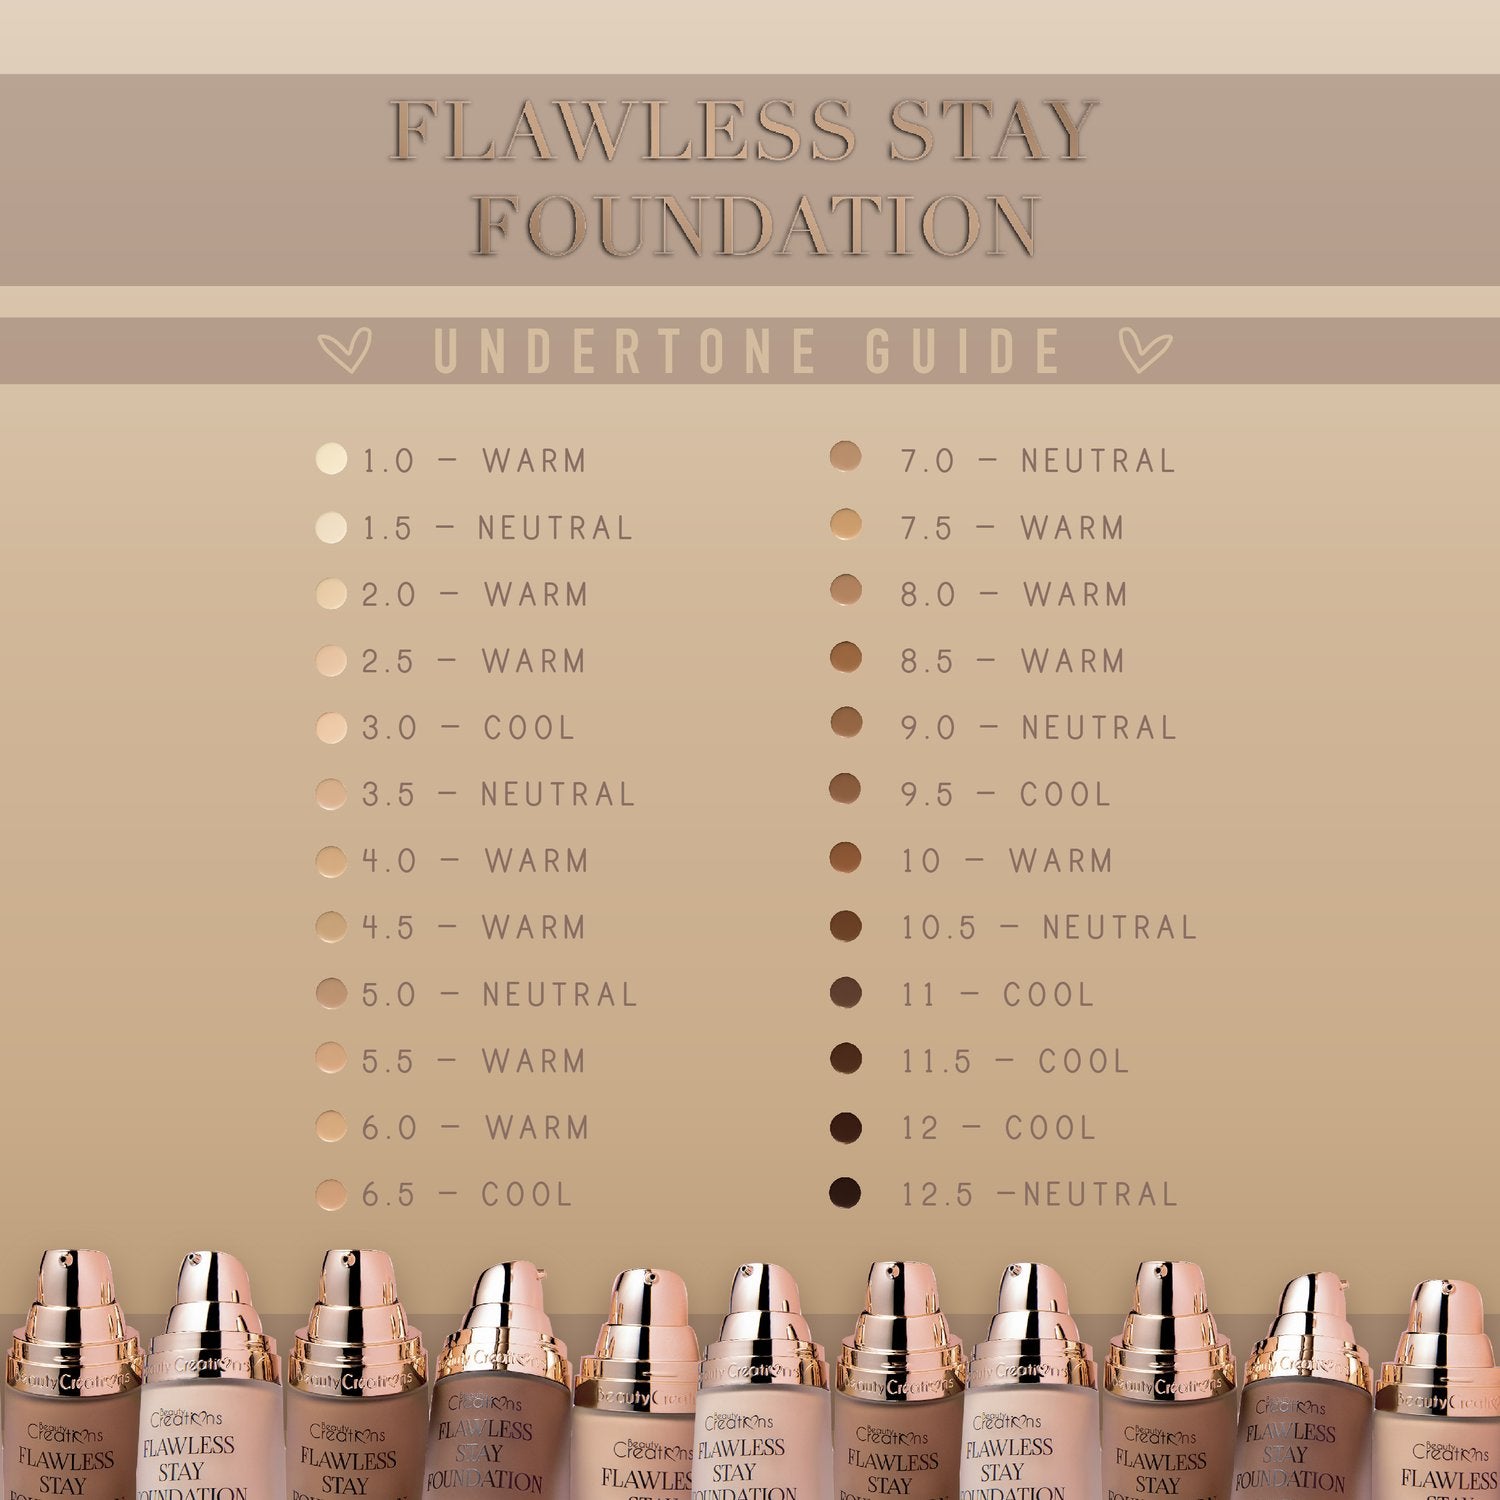 FLAWLESS STAY FOUNDATION FS 9.0